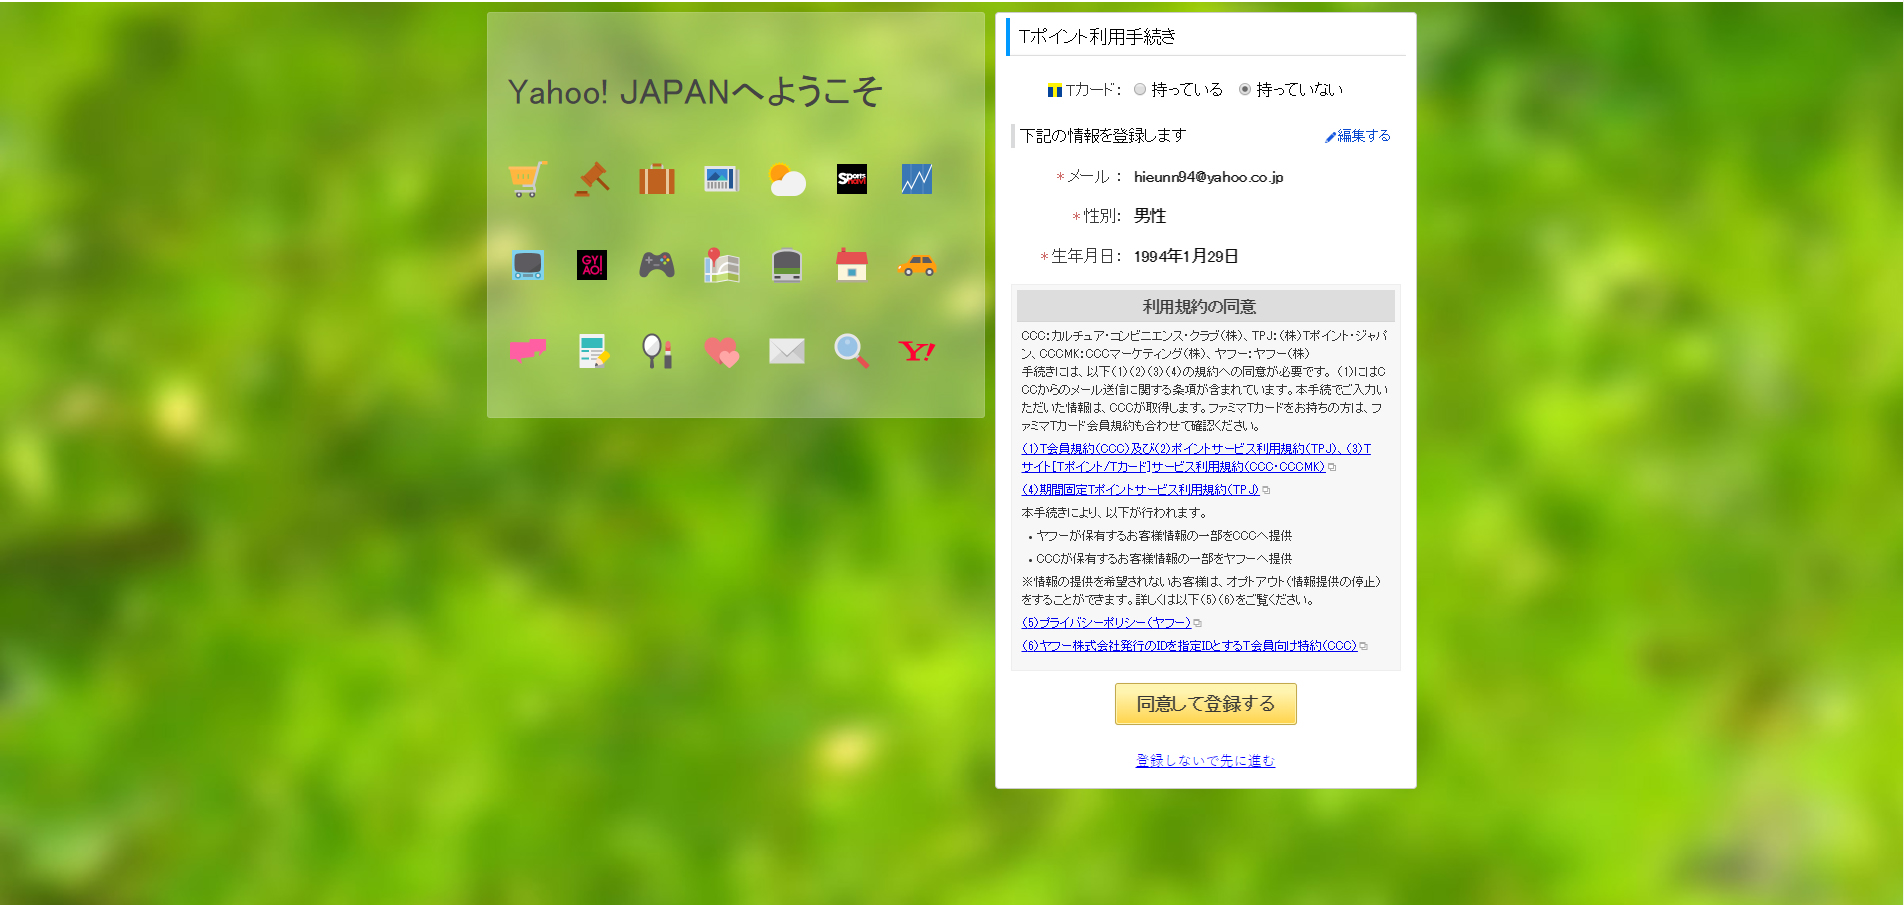 Bước 2 đăng ký tài khoản đấu giá trên Yahoo japan